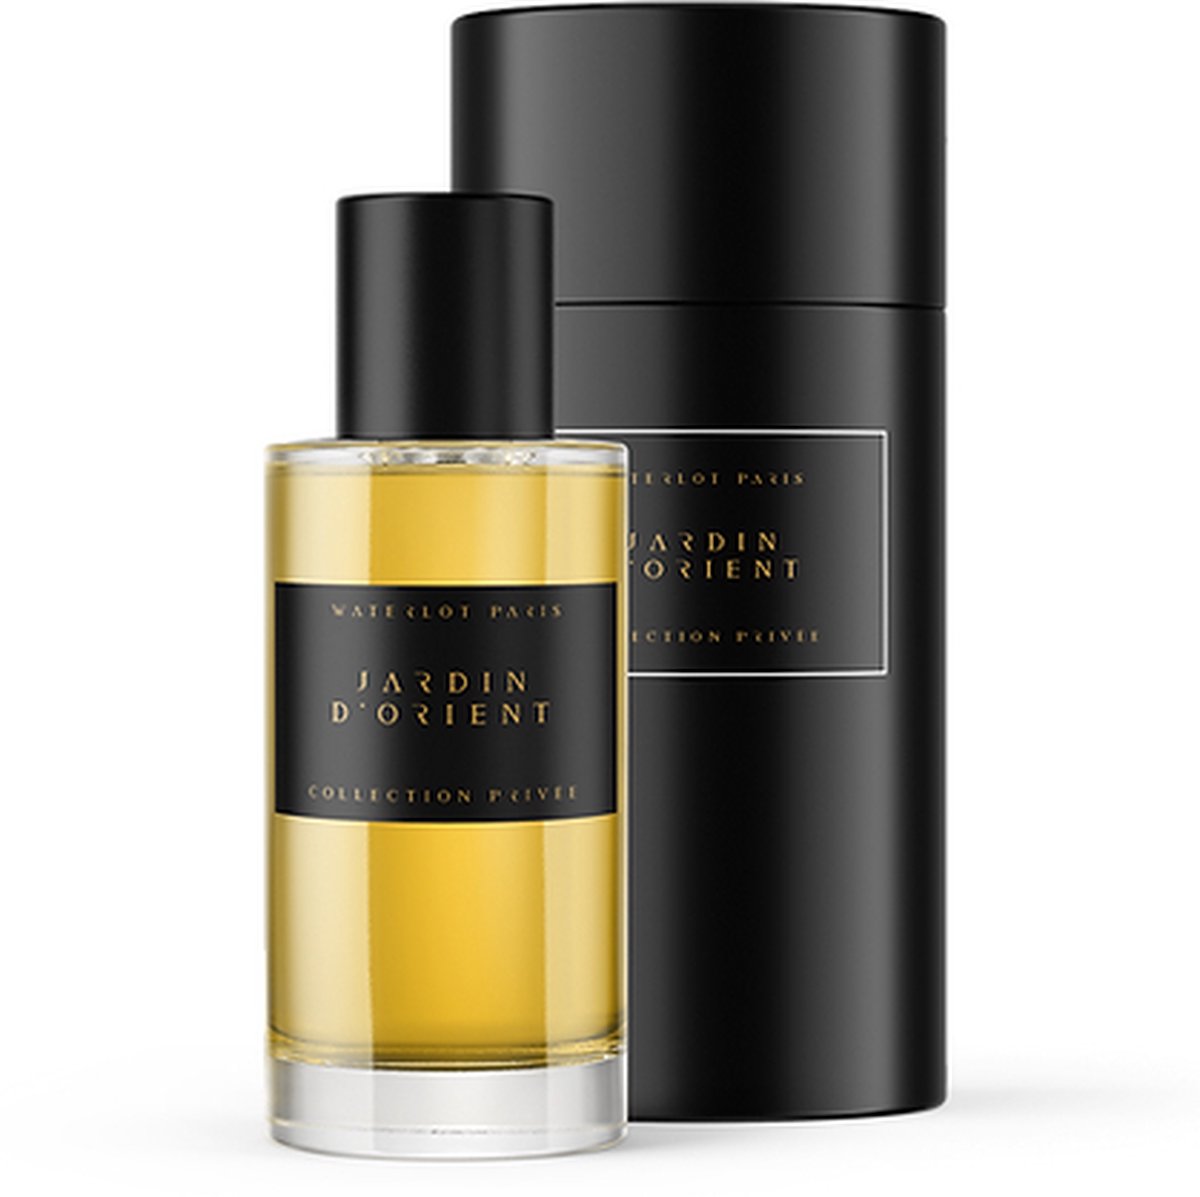 Waterlot Paris Jardin d'Orient - privécollectie parfum - Vanille, Muskus- unisex - kruid en hout - Bloemige tonen 50ml